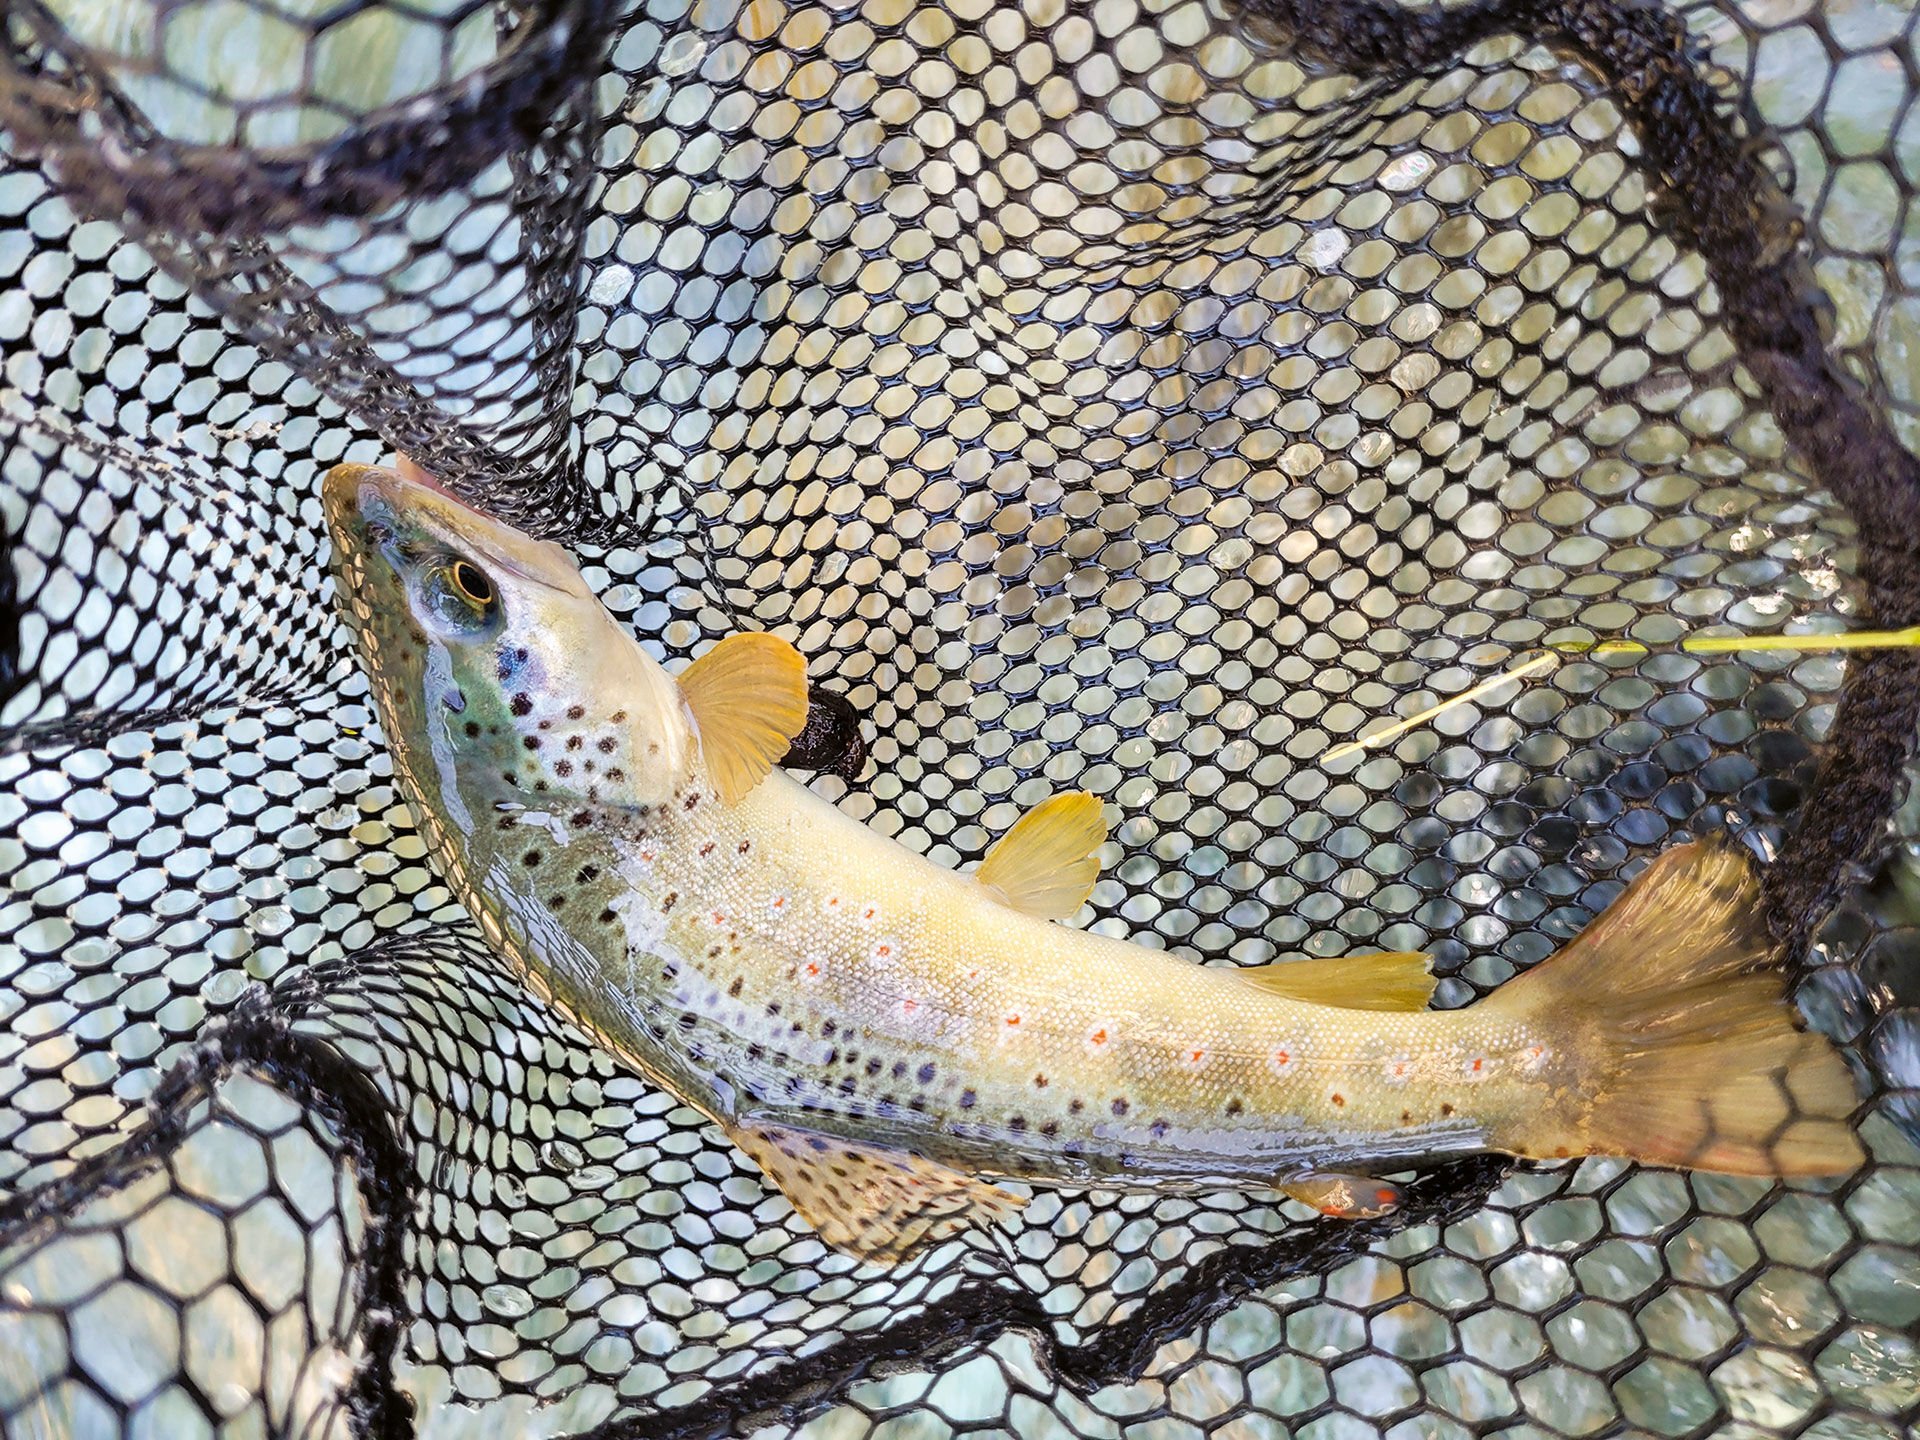  Je nach Gewässerabschnitt sind die Fische anders: In den Oberläufen dominieren kleinere Bach- und Regenbogenforellen, im Hauptbach Gerlos sind die Fische grösser und auch anders gezeichnet.  